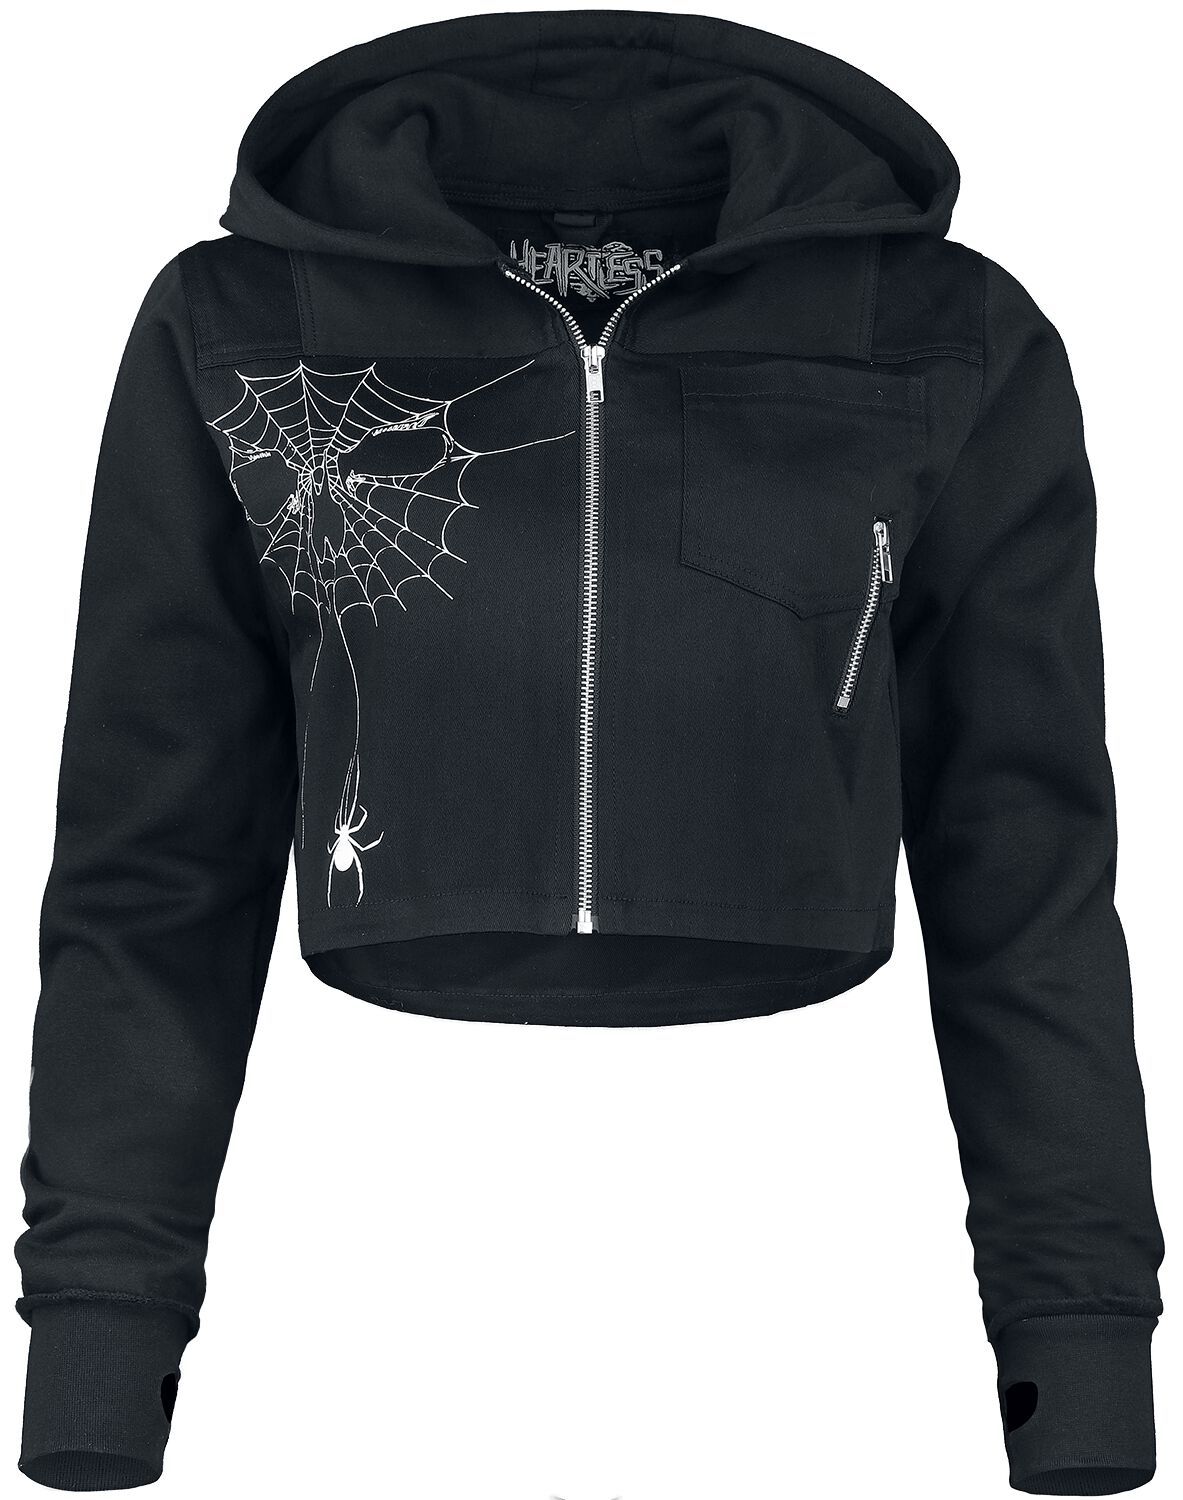 Heartless - Gothic Kapuzenjacke - Widow Maker Jacket - S bis XXL - für Damen - Größe XL - schwarz